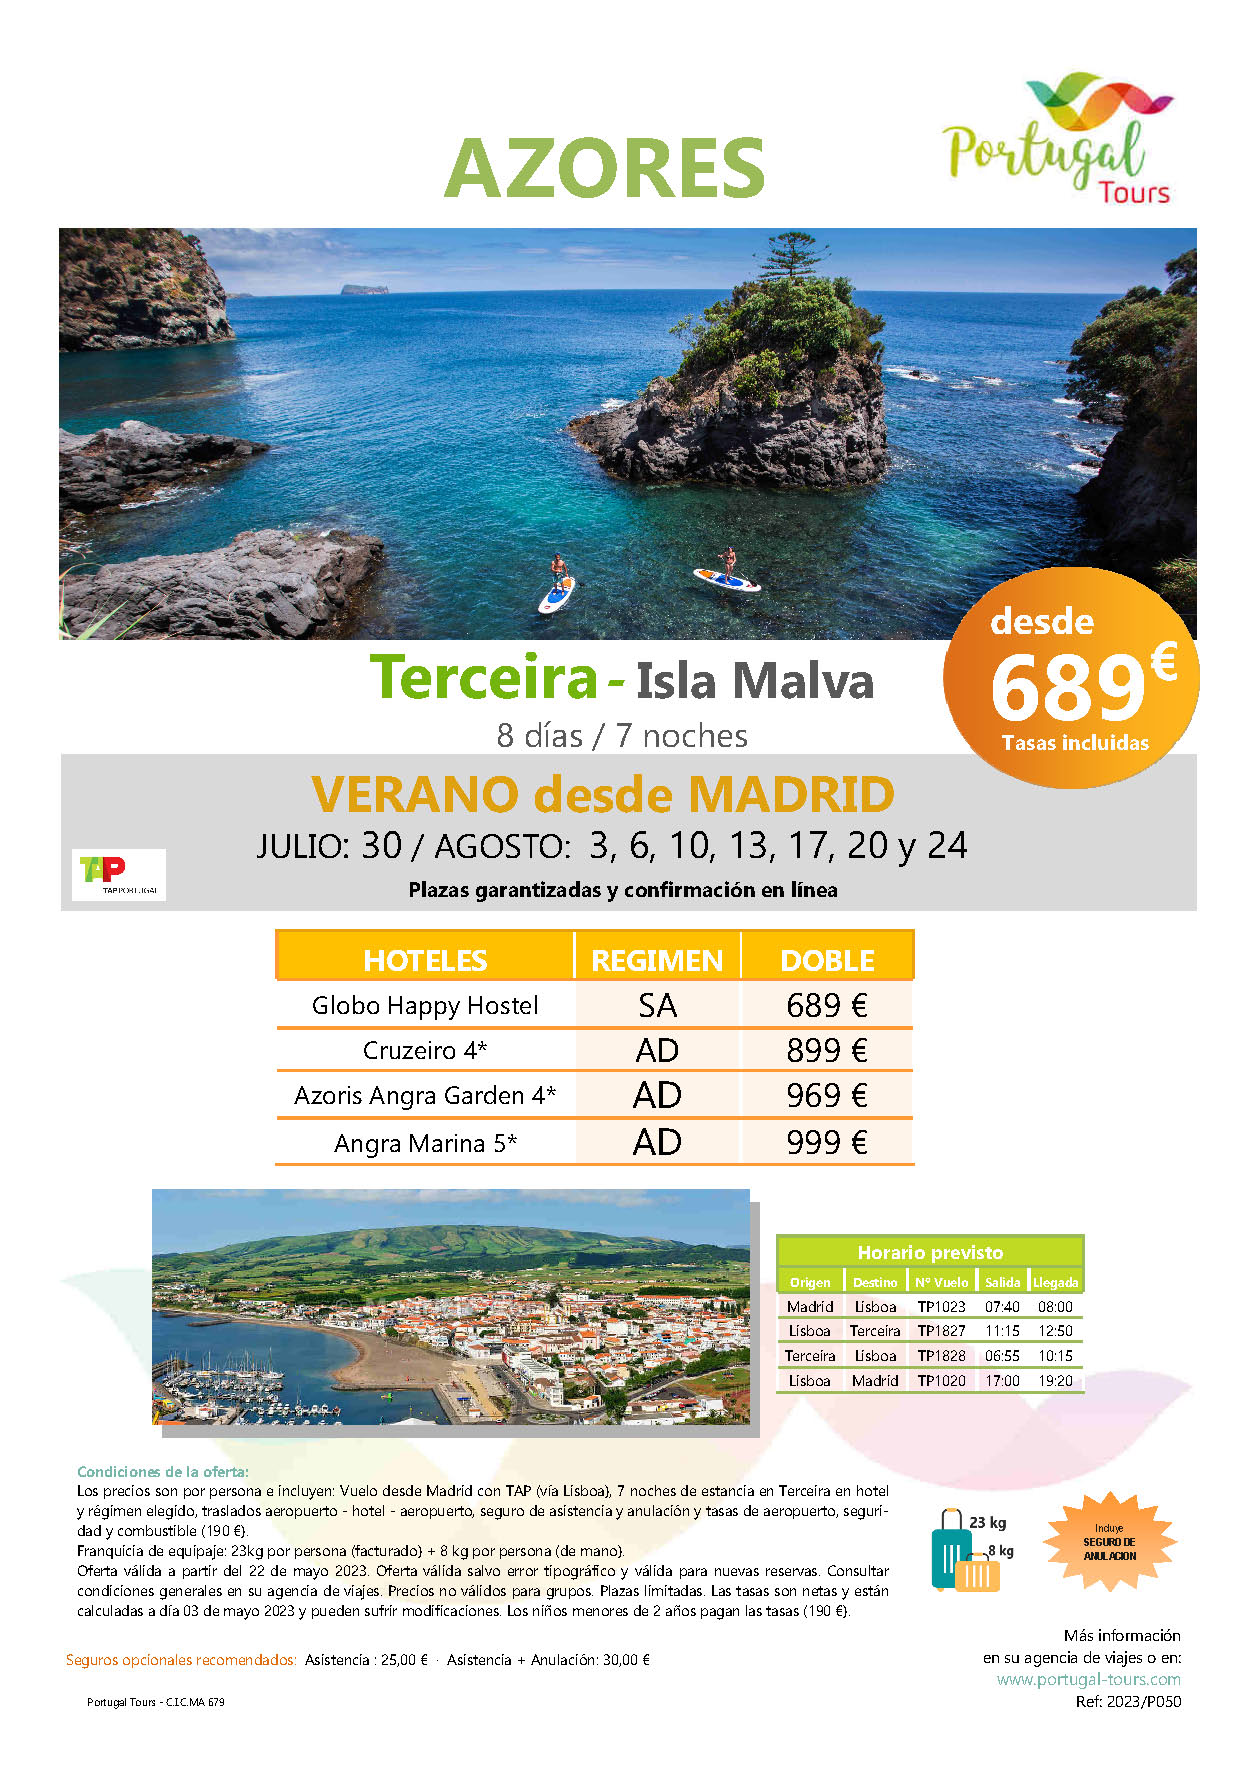 Oferta Portugal Tours Estancia en Terceira Azores salidas Julio y Agosto 2023 desde Madrid vuelos Tap Air